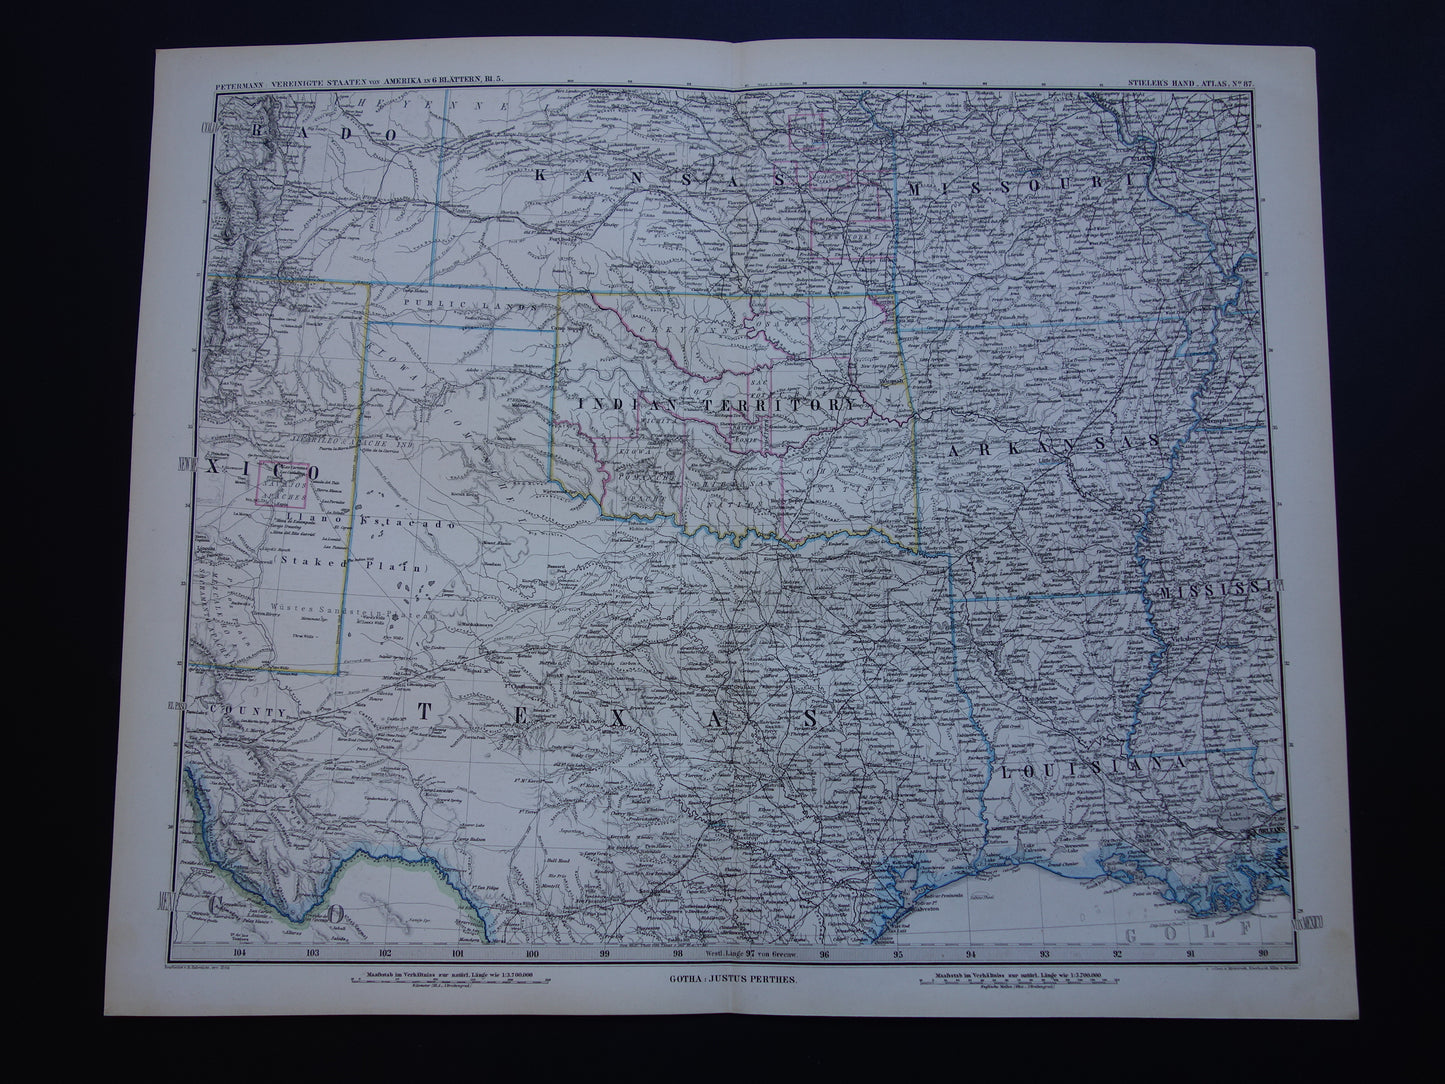 VERENIGDE STATEN Oude kaart van de VS uit 1886 originele grote antieke landkaart met jaartal - vintage poster van Amerika XL